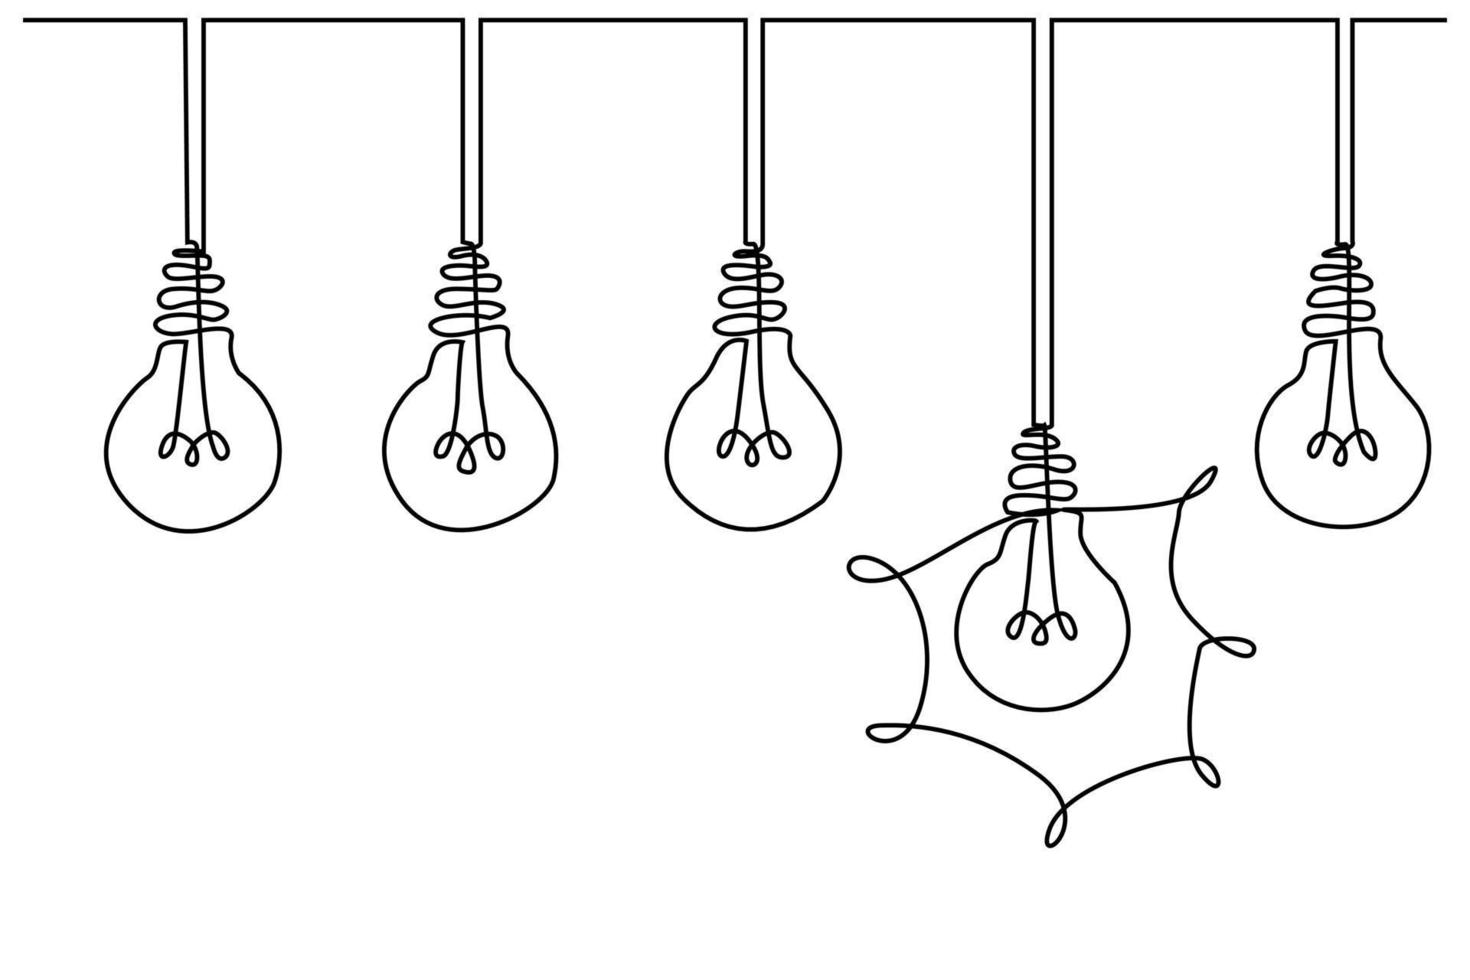 desenho de linha contínua. lâmpada elétrica. metáfora da ideia do eco. vetor